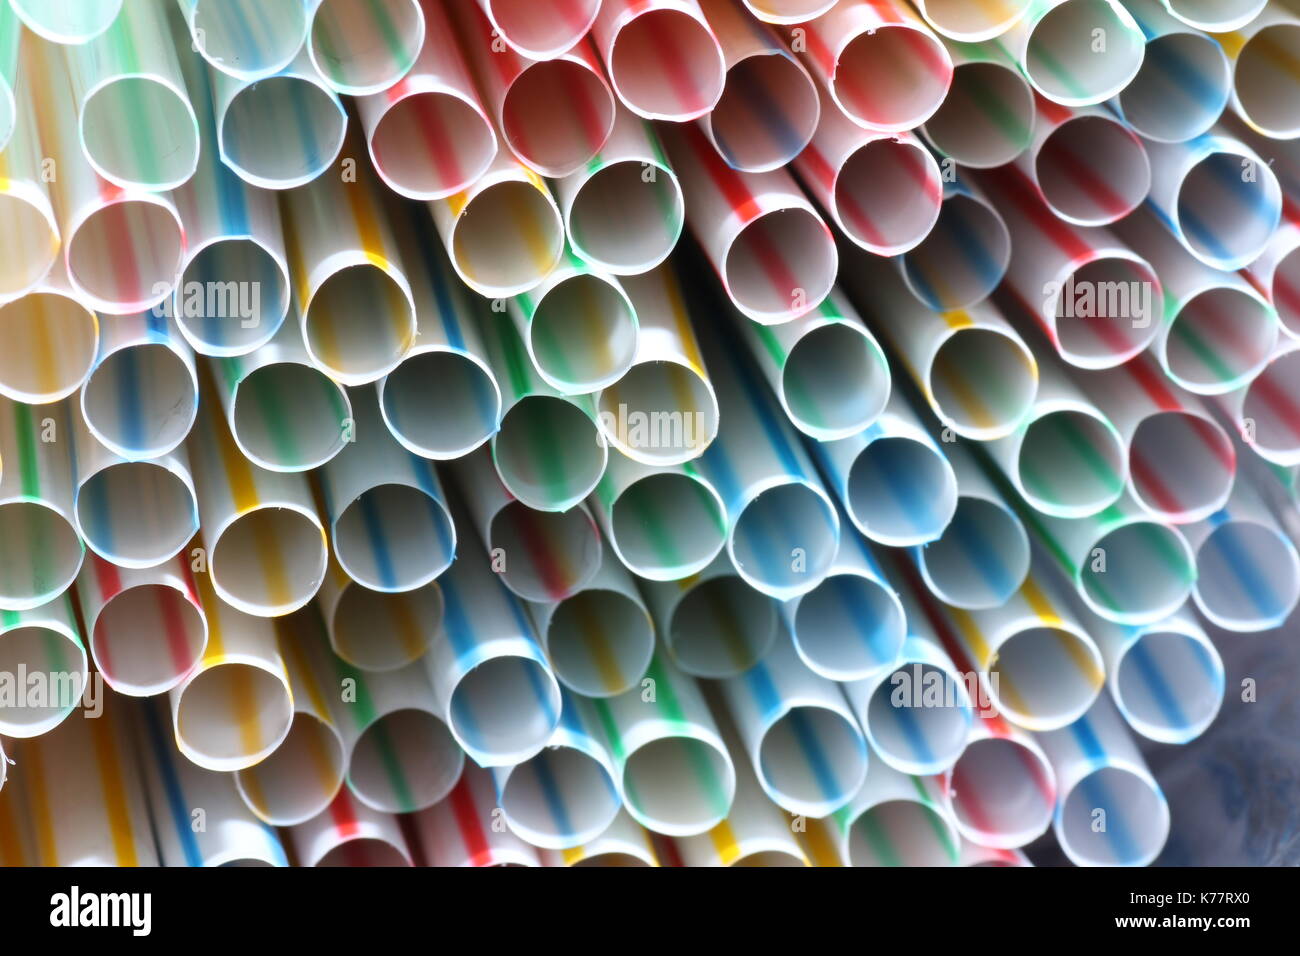 Bunte trinkhalme aus kunststoff, colorido, Pajas de plástico Foto de stock